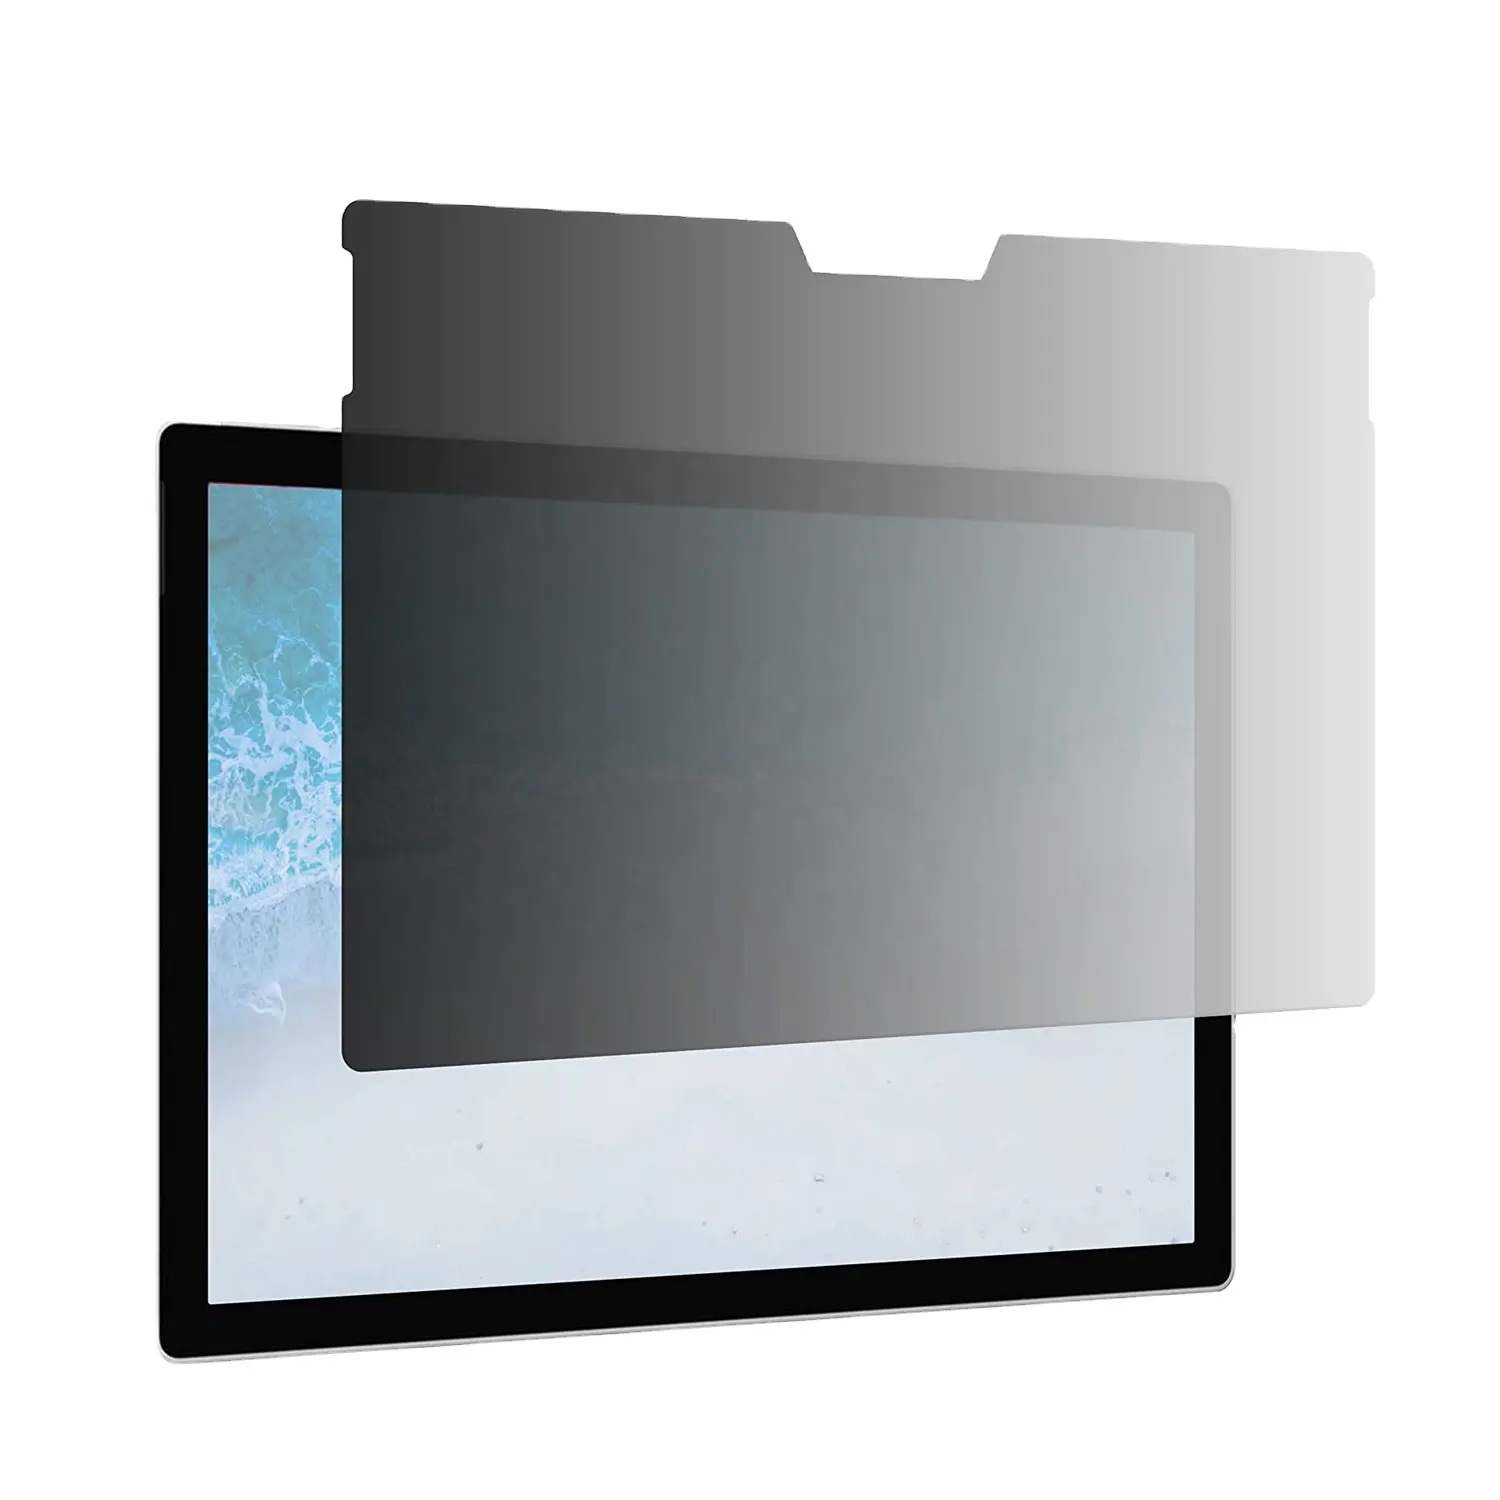 Protetor de tela anti-reflexo para laptop, 4 vias, autoadesivo, filtro de privacidade, anti-azul, para microsoft superfície pro 4 5 6 7